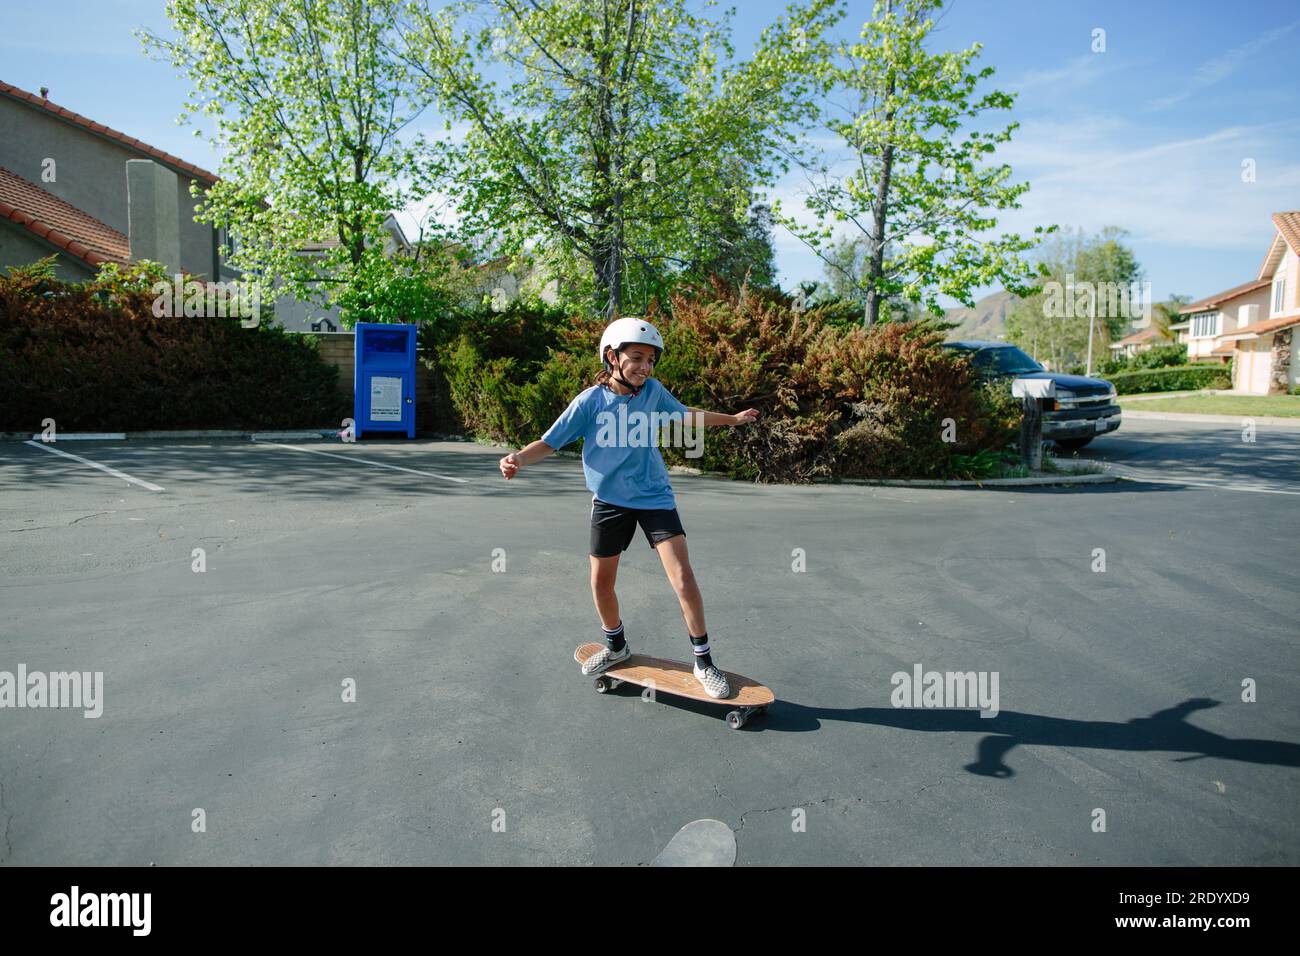 Ein Mädchen, das auf einem leeren Parkplatz Skateboard fährt Stockfoto